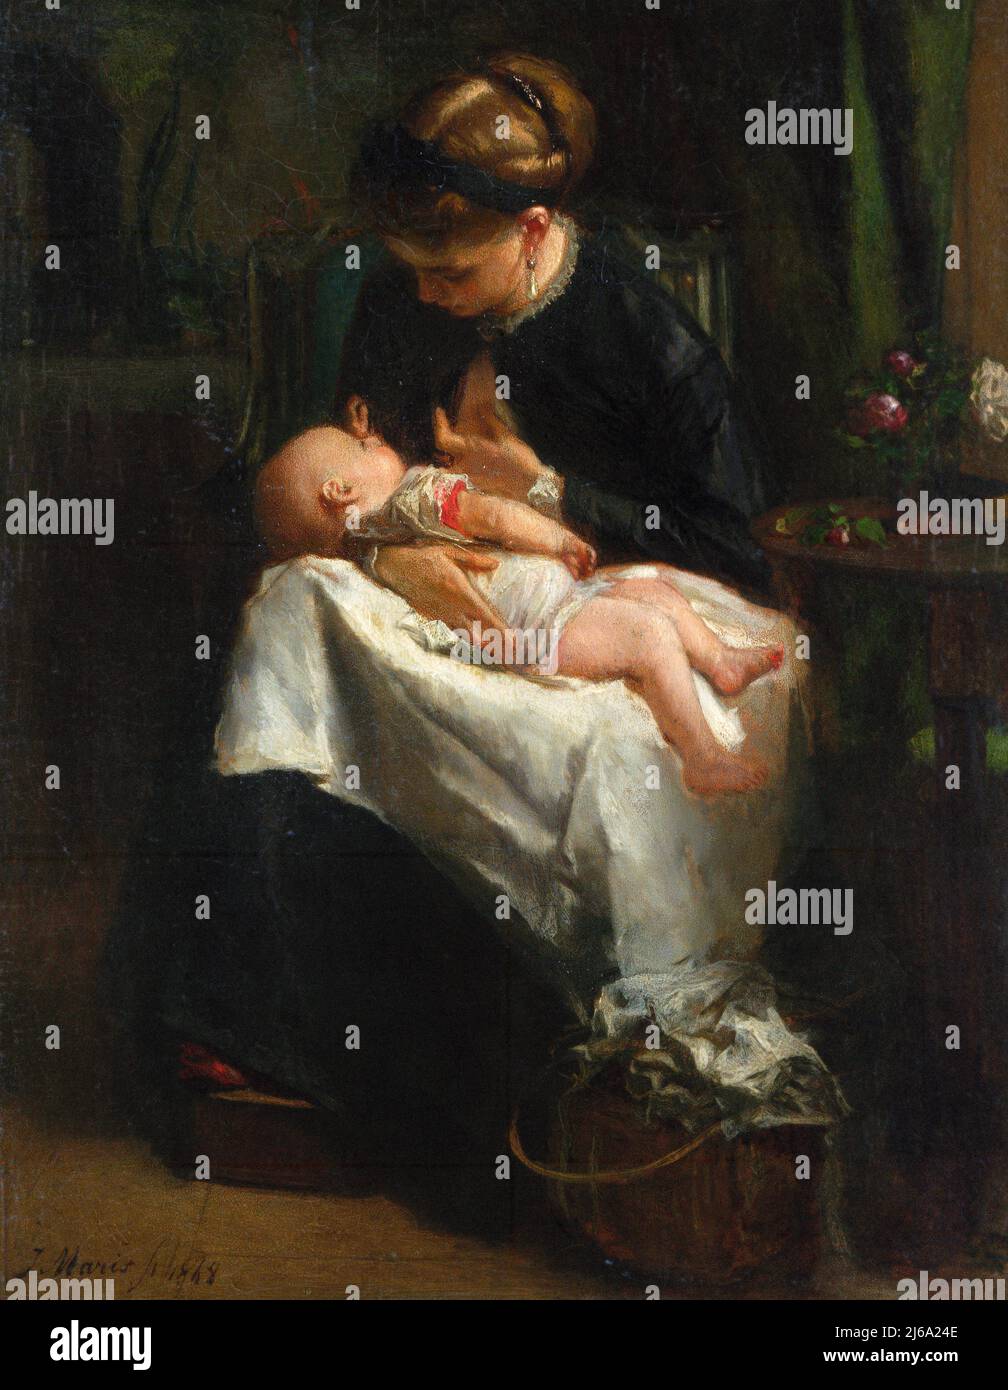 Eine junge Frau, die ein Baby stillt, vom niederländischen Künstler Jacob Maris (1837-1899), Öl auf Mahagoni, 1868 Stockfoto